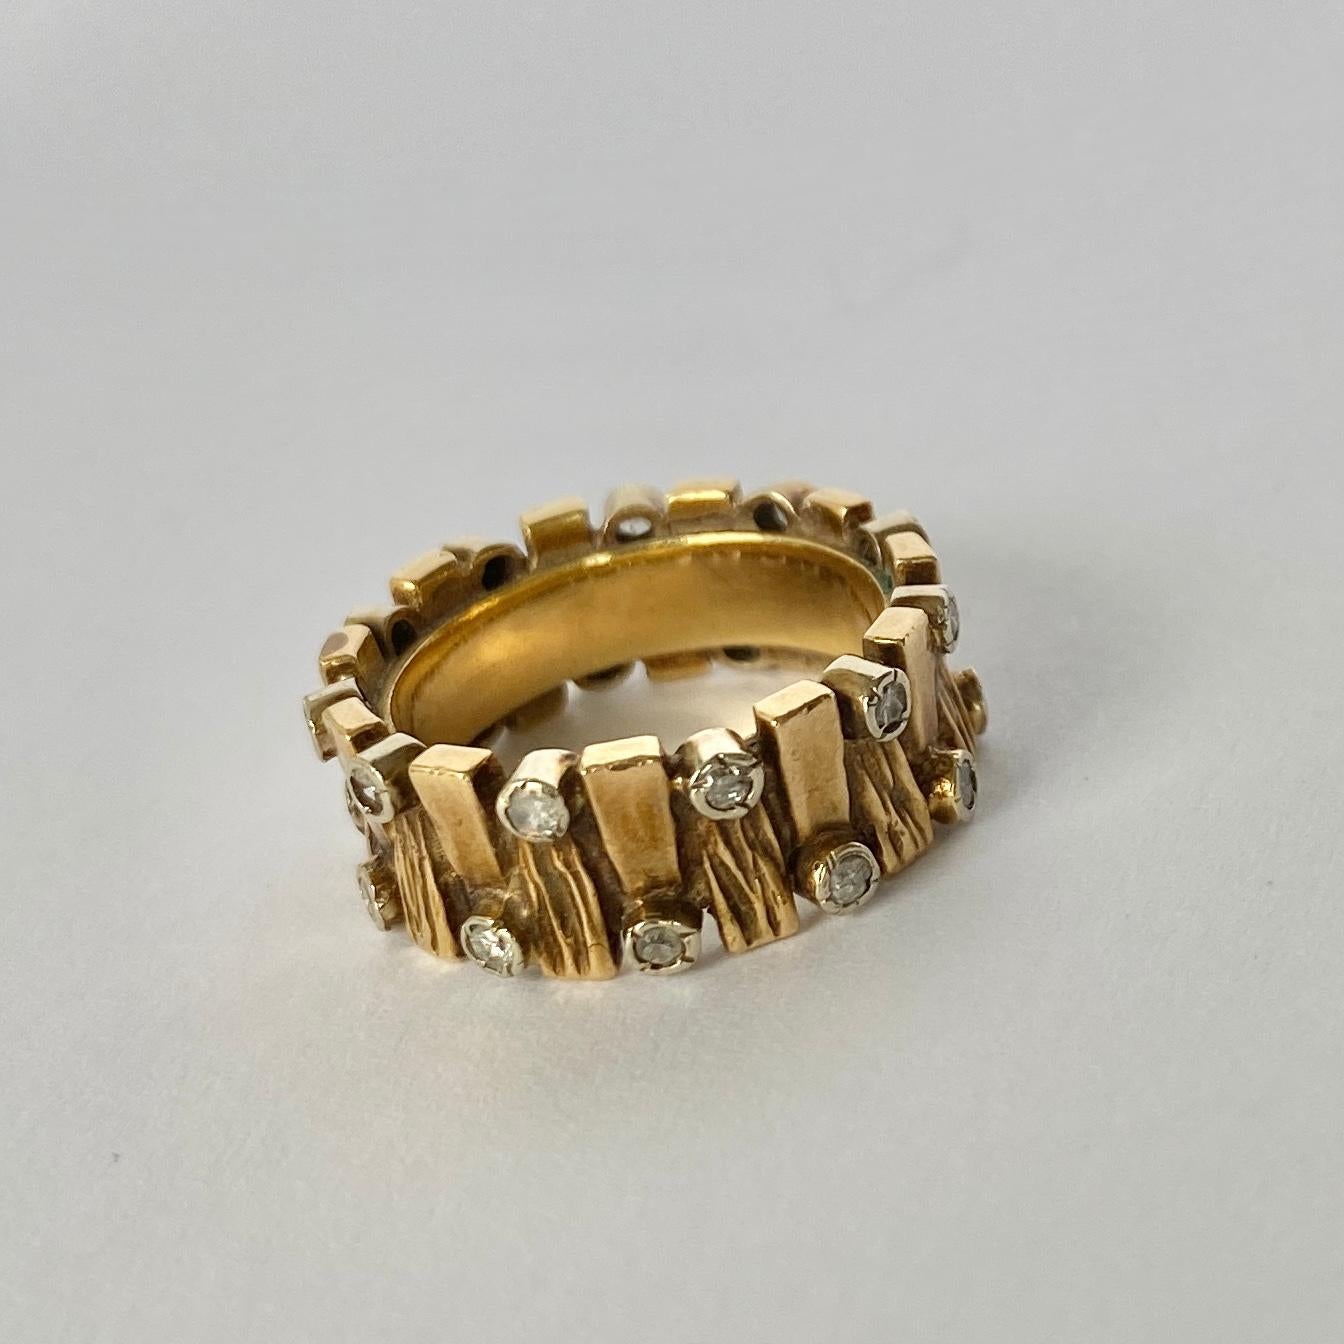 Dieses strukturierte Band aus 18 Karat Gold enthält 22 Diamanten von insgesamt 45 Karat. Die Steine sind in einfachen Platinfassungen gefasst. 

Ringgröße: H 1/2 oder 4 
Bandbreite: 7mm

Gewicht: 7,7 g